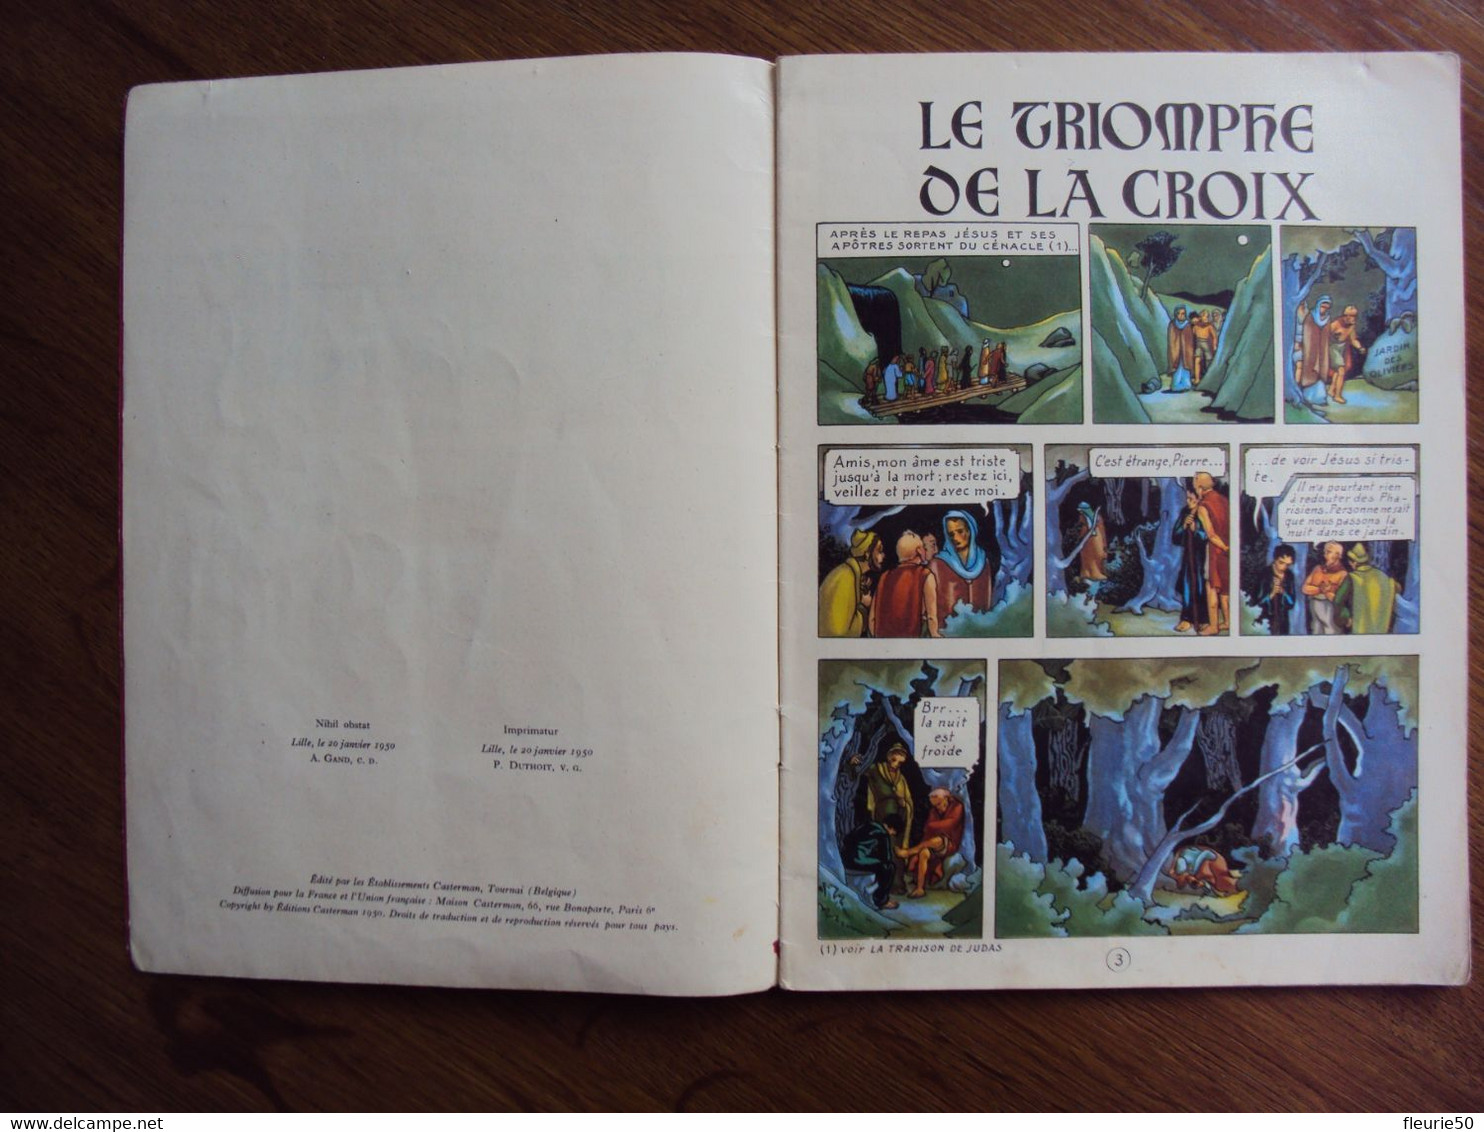 LE TRIOMPHE DE LA CROIX - Quatrième album de La Bonne Nouvelle (Pilamm). Lille, le 20 janvier 1950.